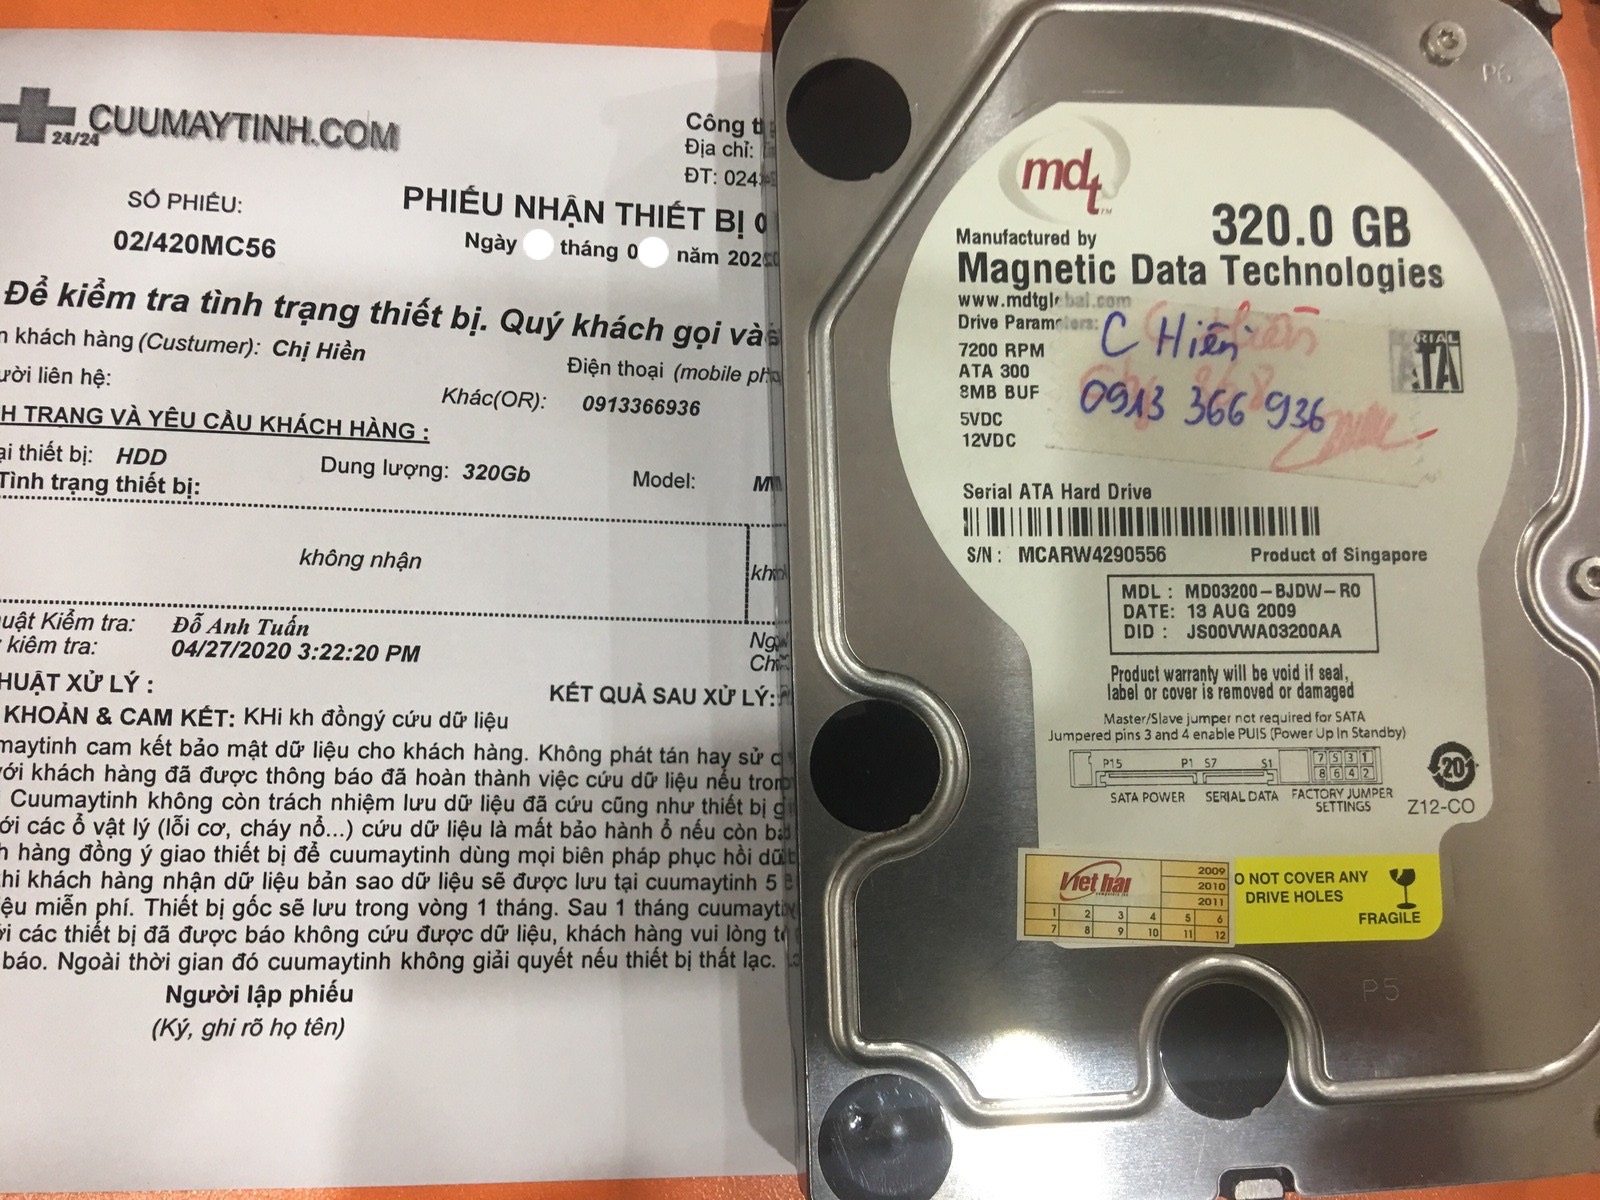 Khôi phục dữ liệu ổ cứng MDT 320GB không nhận 07/05/2020 - cuumaytinh